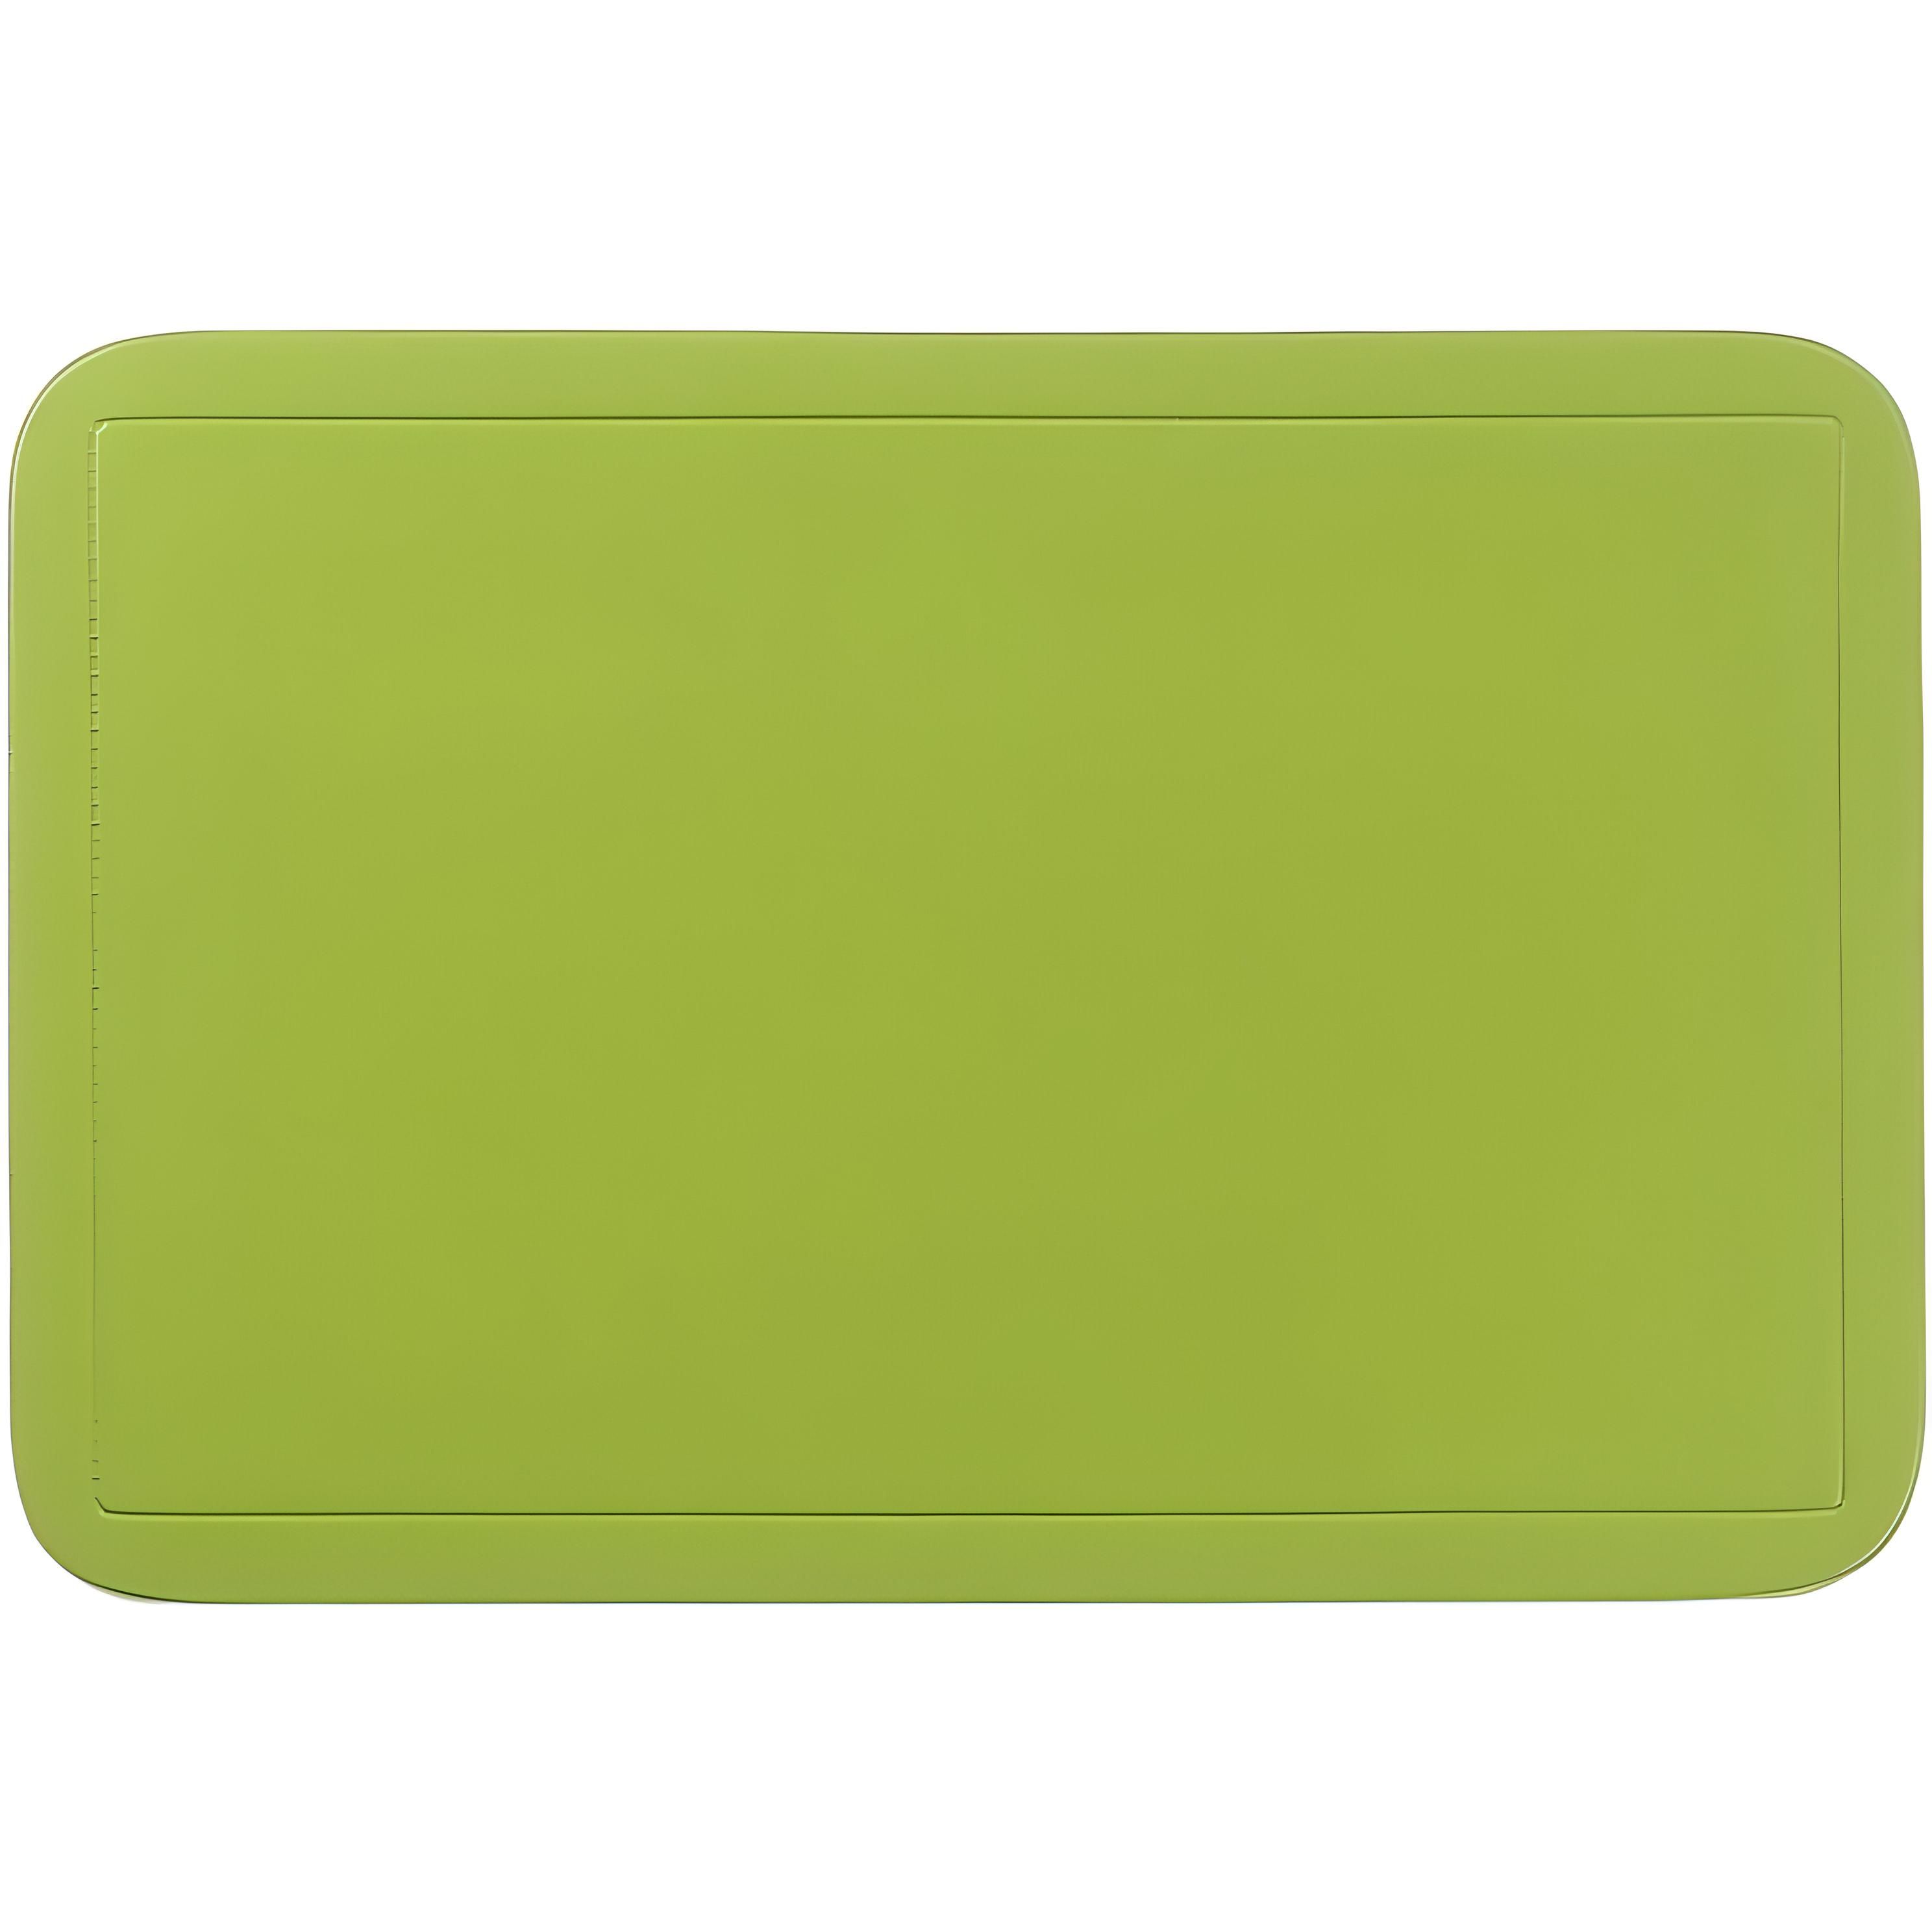 Коврик сервировочный Kela Uni 43.5х28.5 см лимонно-зеленый(15004) - фото 1